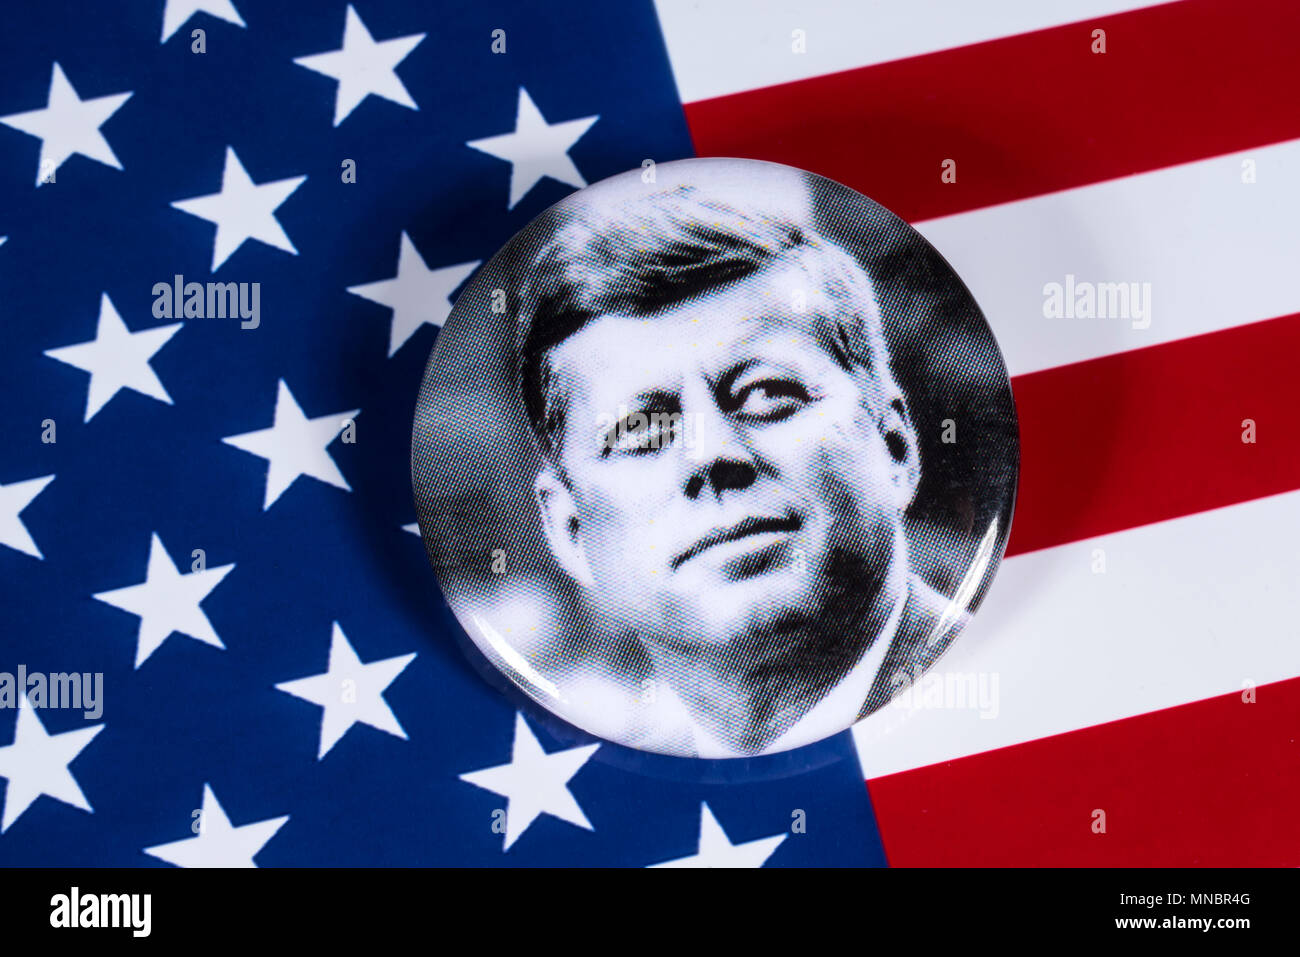 Londres, Royaume-Uni - 27 avril 2018 : un badge John F. Kennedy illustré sur les USA drapeau, le 27 avril 2018. John F Kennedy a été le 35e Président de l'ONU Banque D'Images